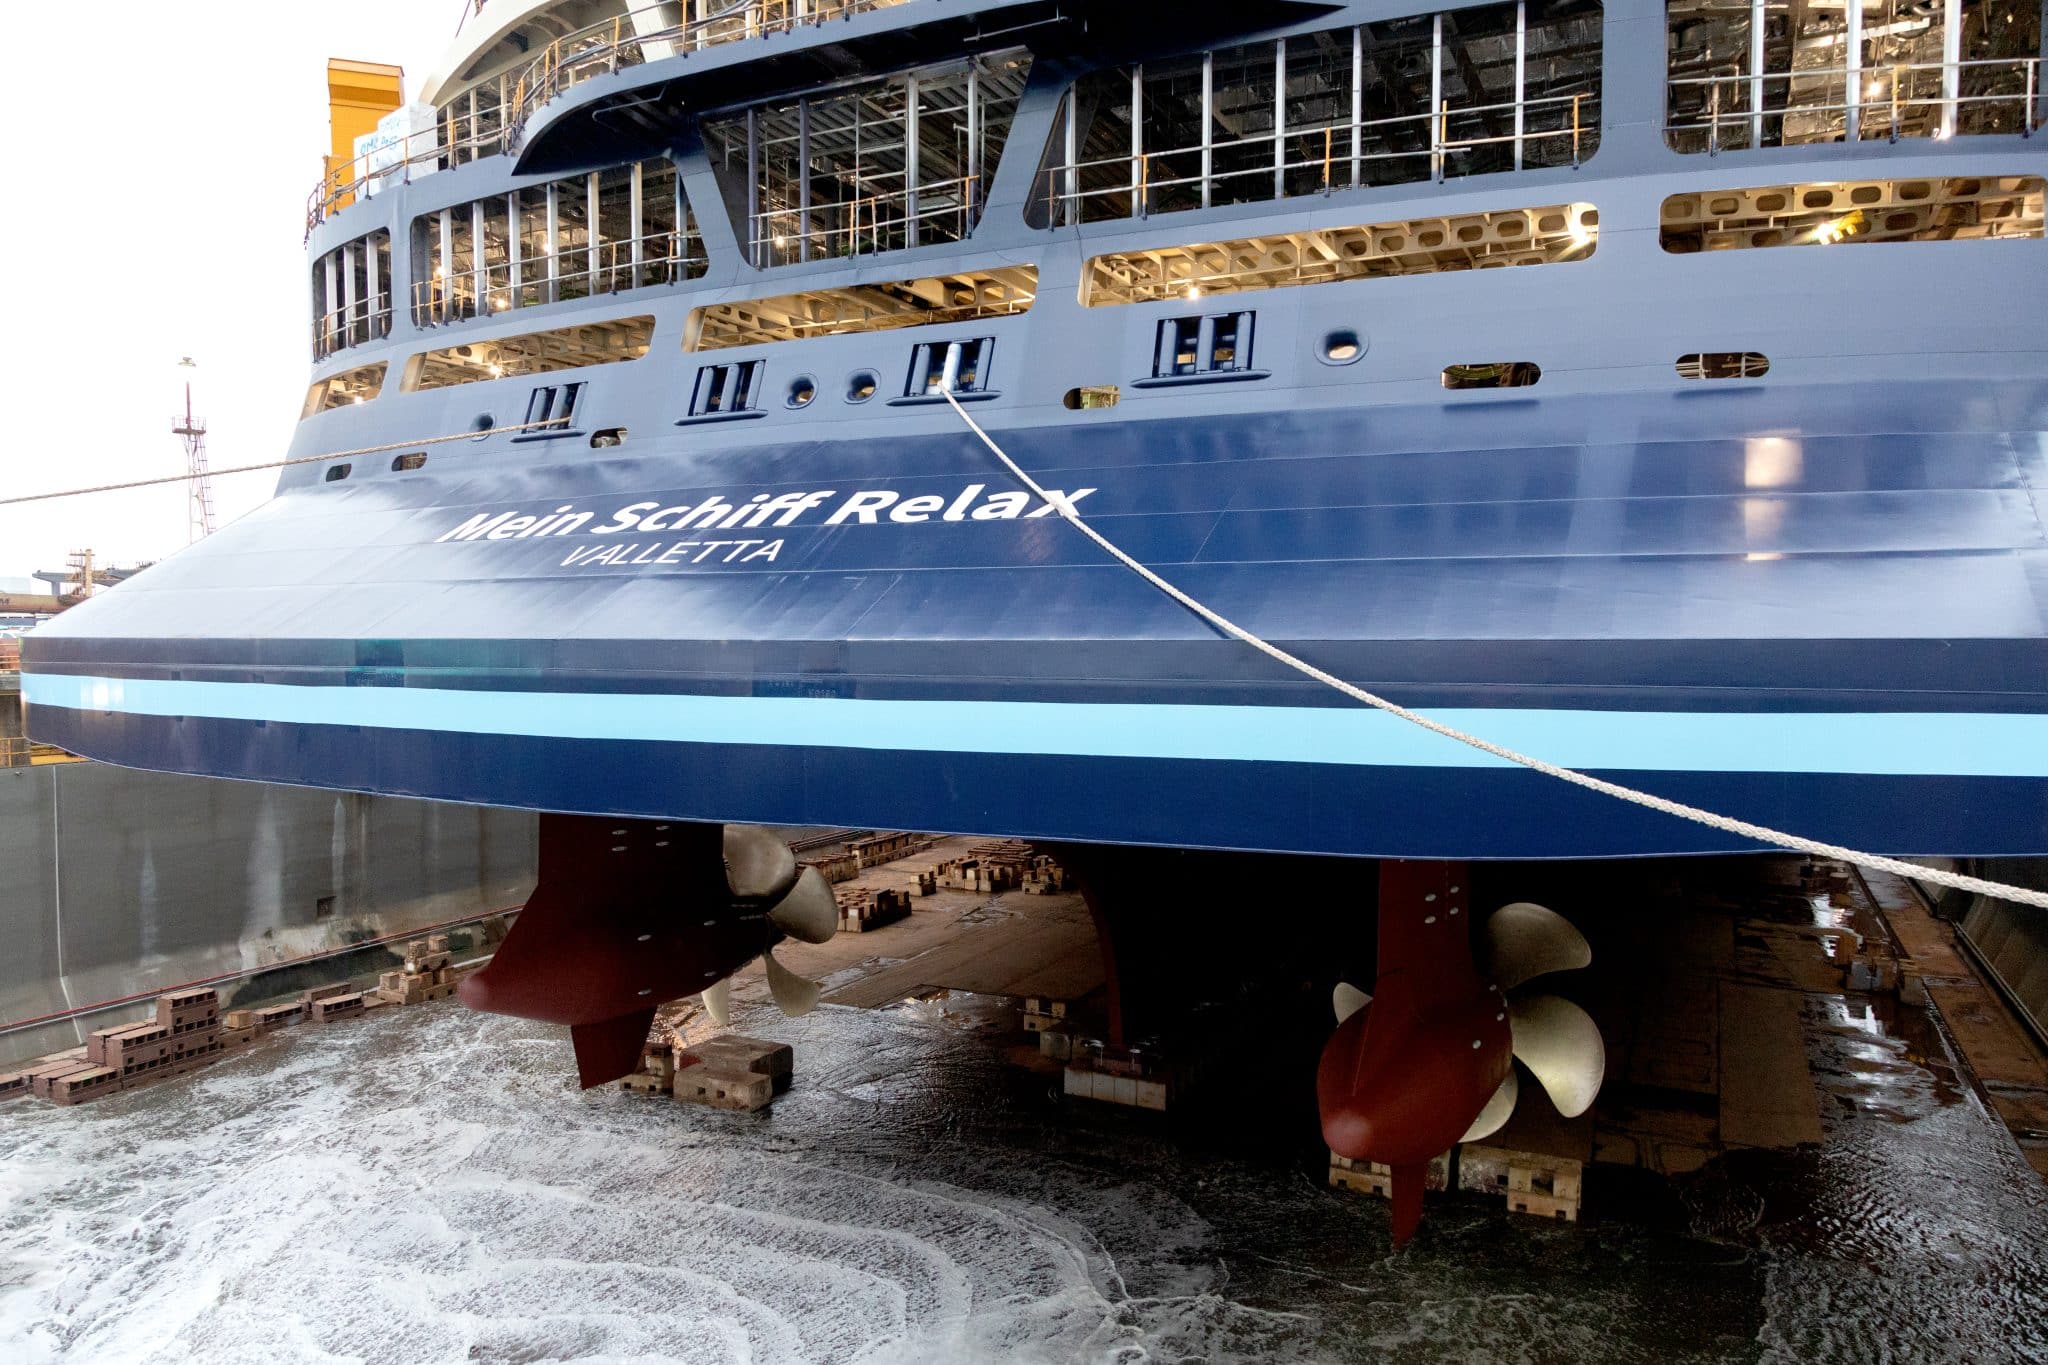 Mein Schiff Relax: Erstes InTUItion-Klasse Schiff jetzt im Wasser – Luxuriöse Kreuzfahrten für Jeden